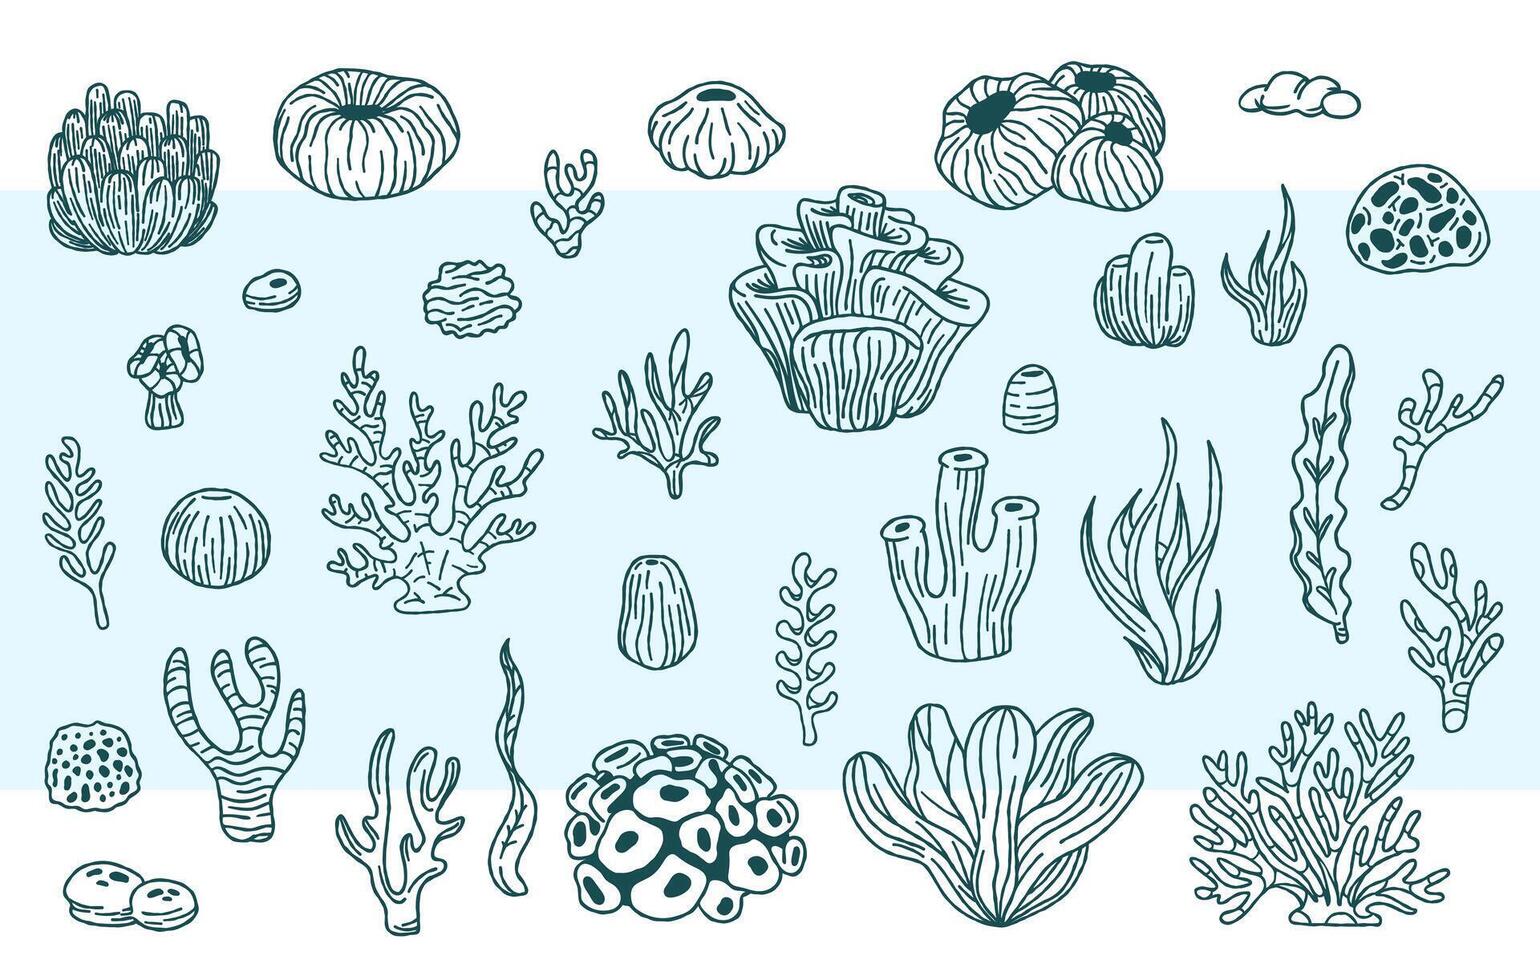 Vektor Sammlung von Hand gezeichnet Meer Unkraut, Korallen, Meer Anemonen Illustration. unter Wasser skizzieren.